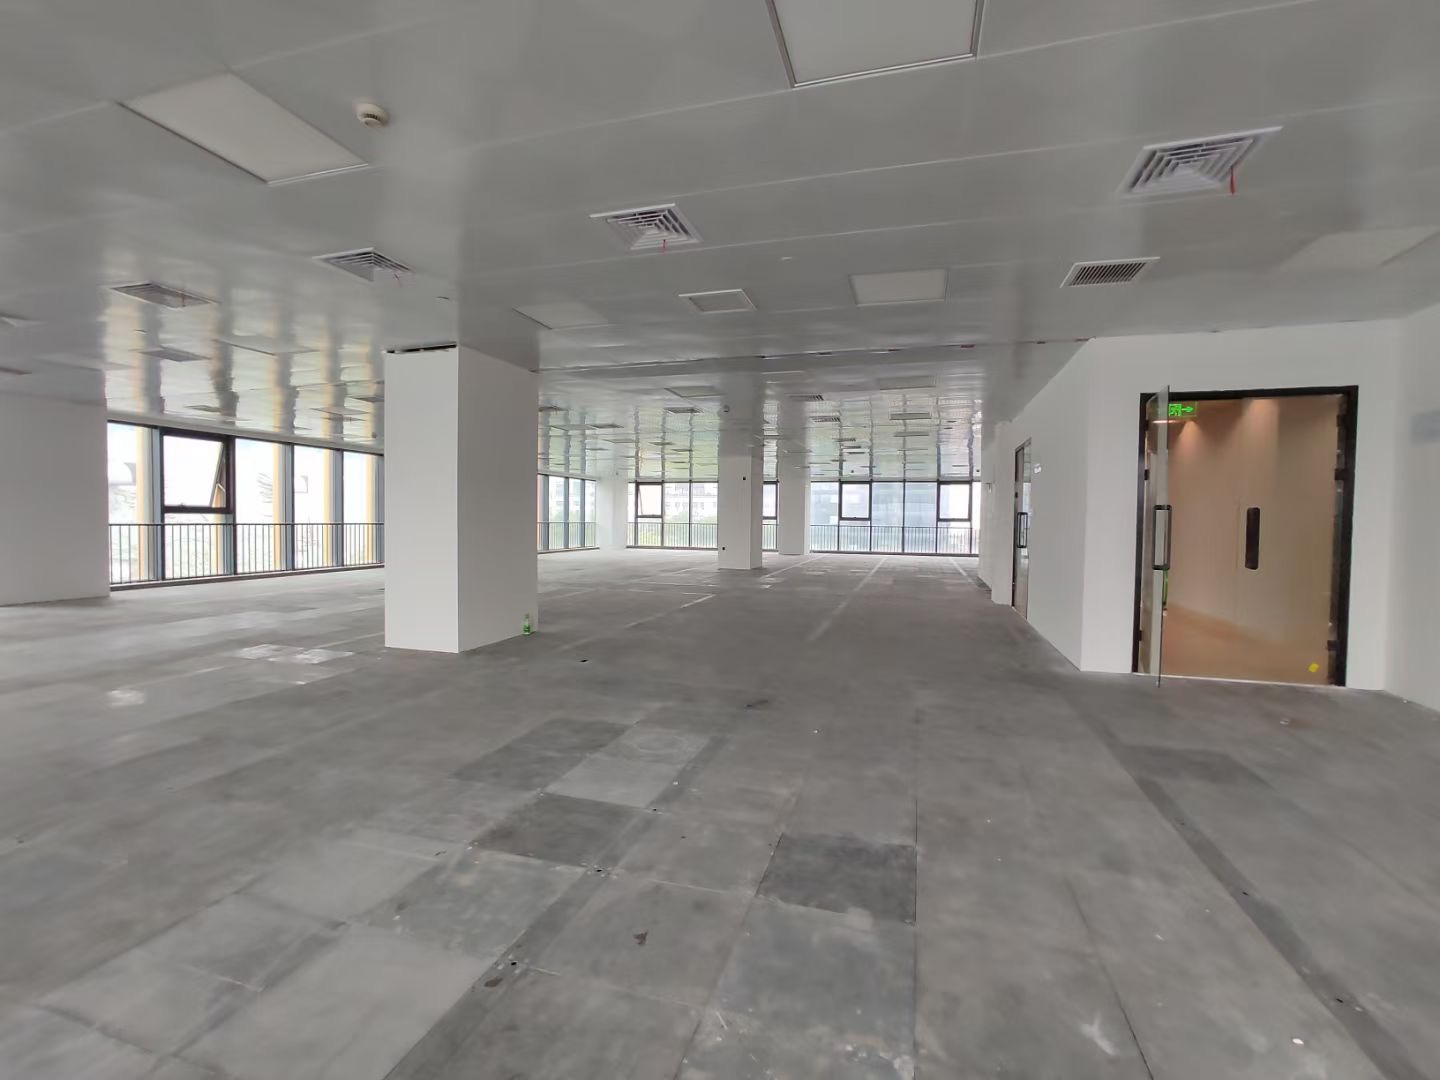 新生丽兰广场1500平米办公室出租-租金价格1.80元/m²/天